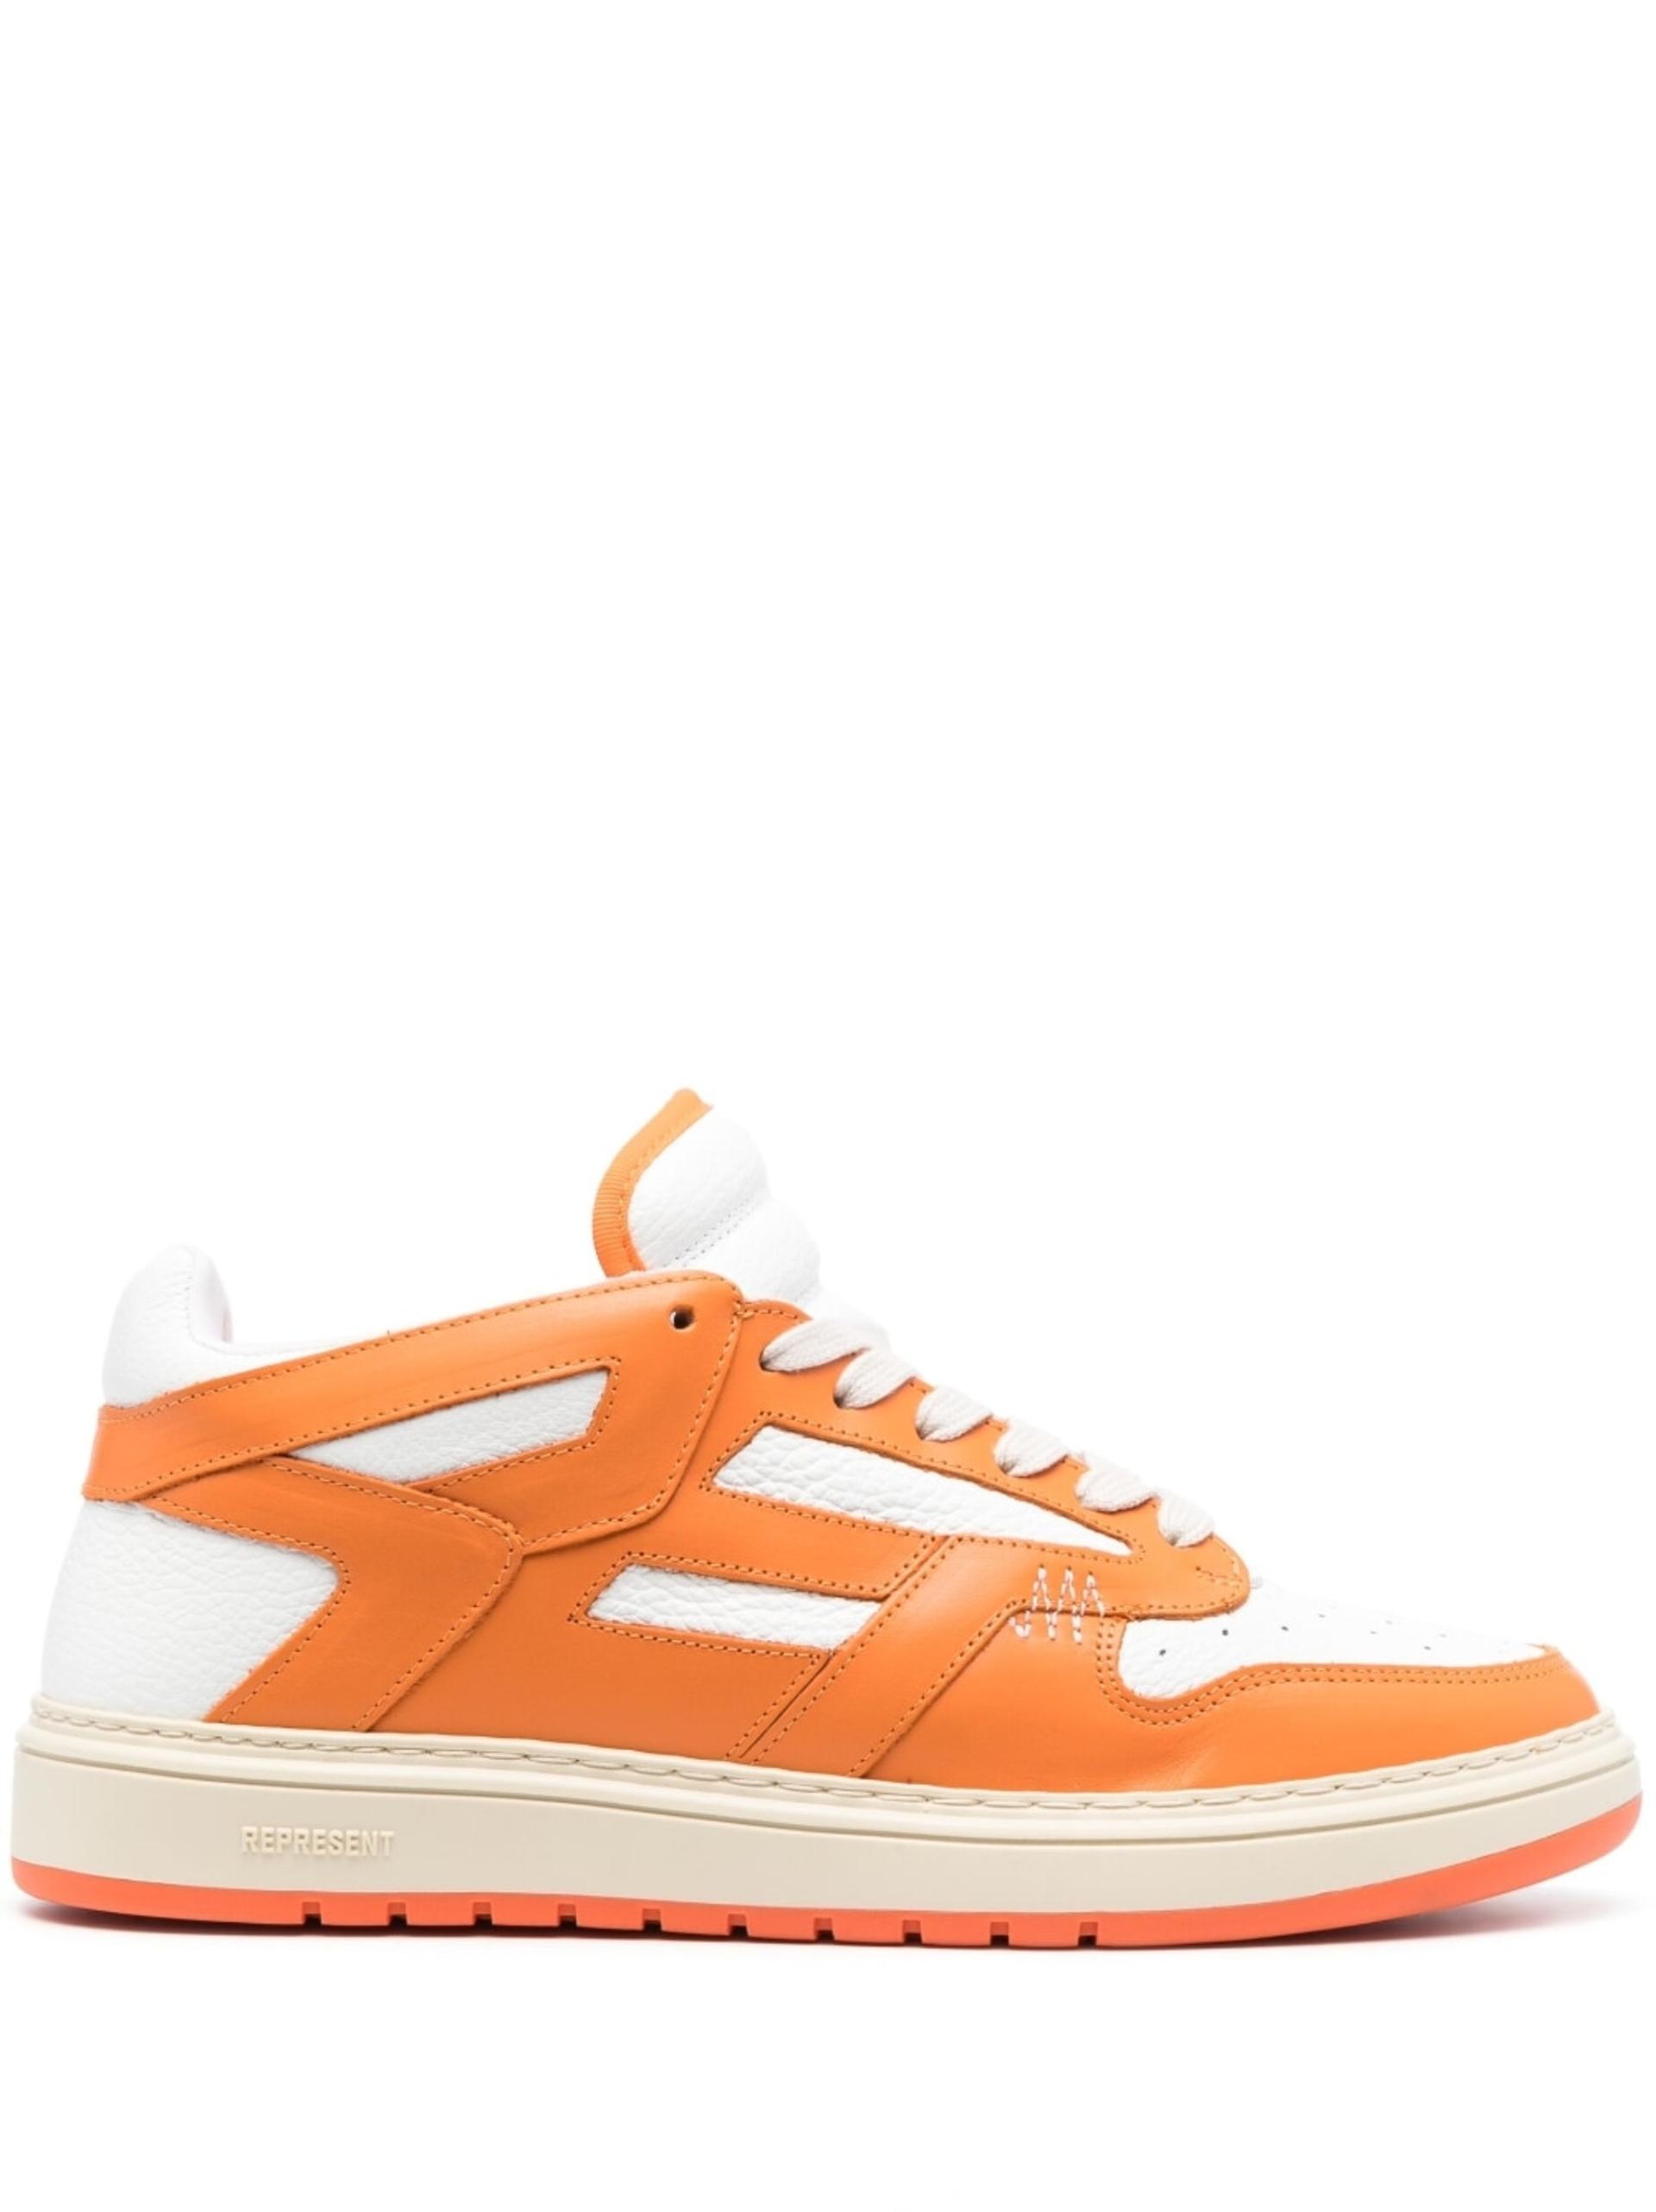 Represent Reptor Low-top Sneakers in Orange for Men | Lyst